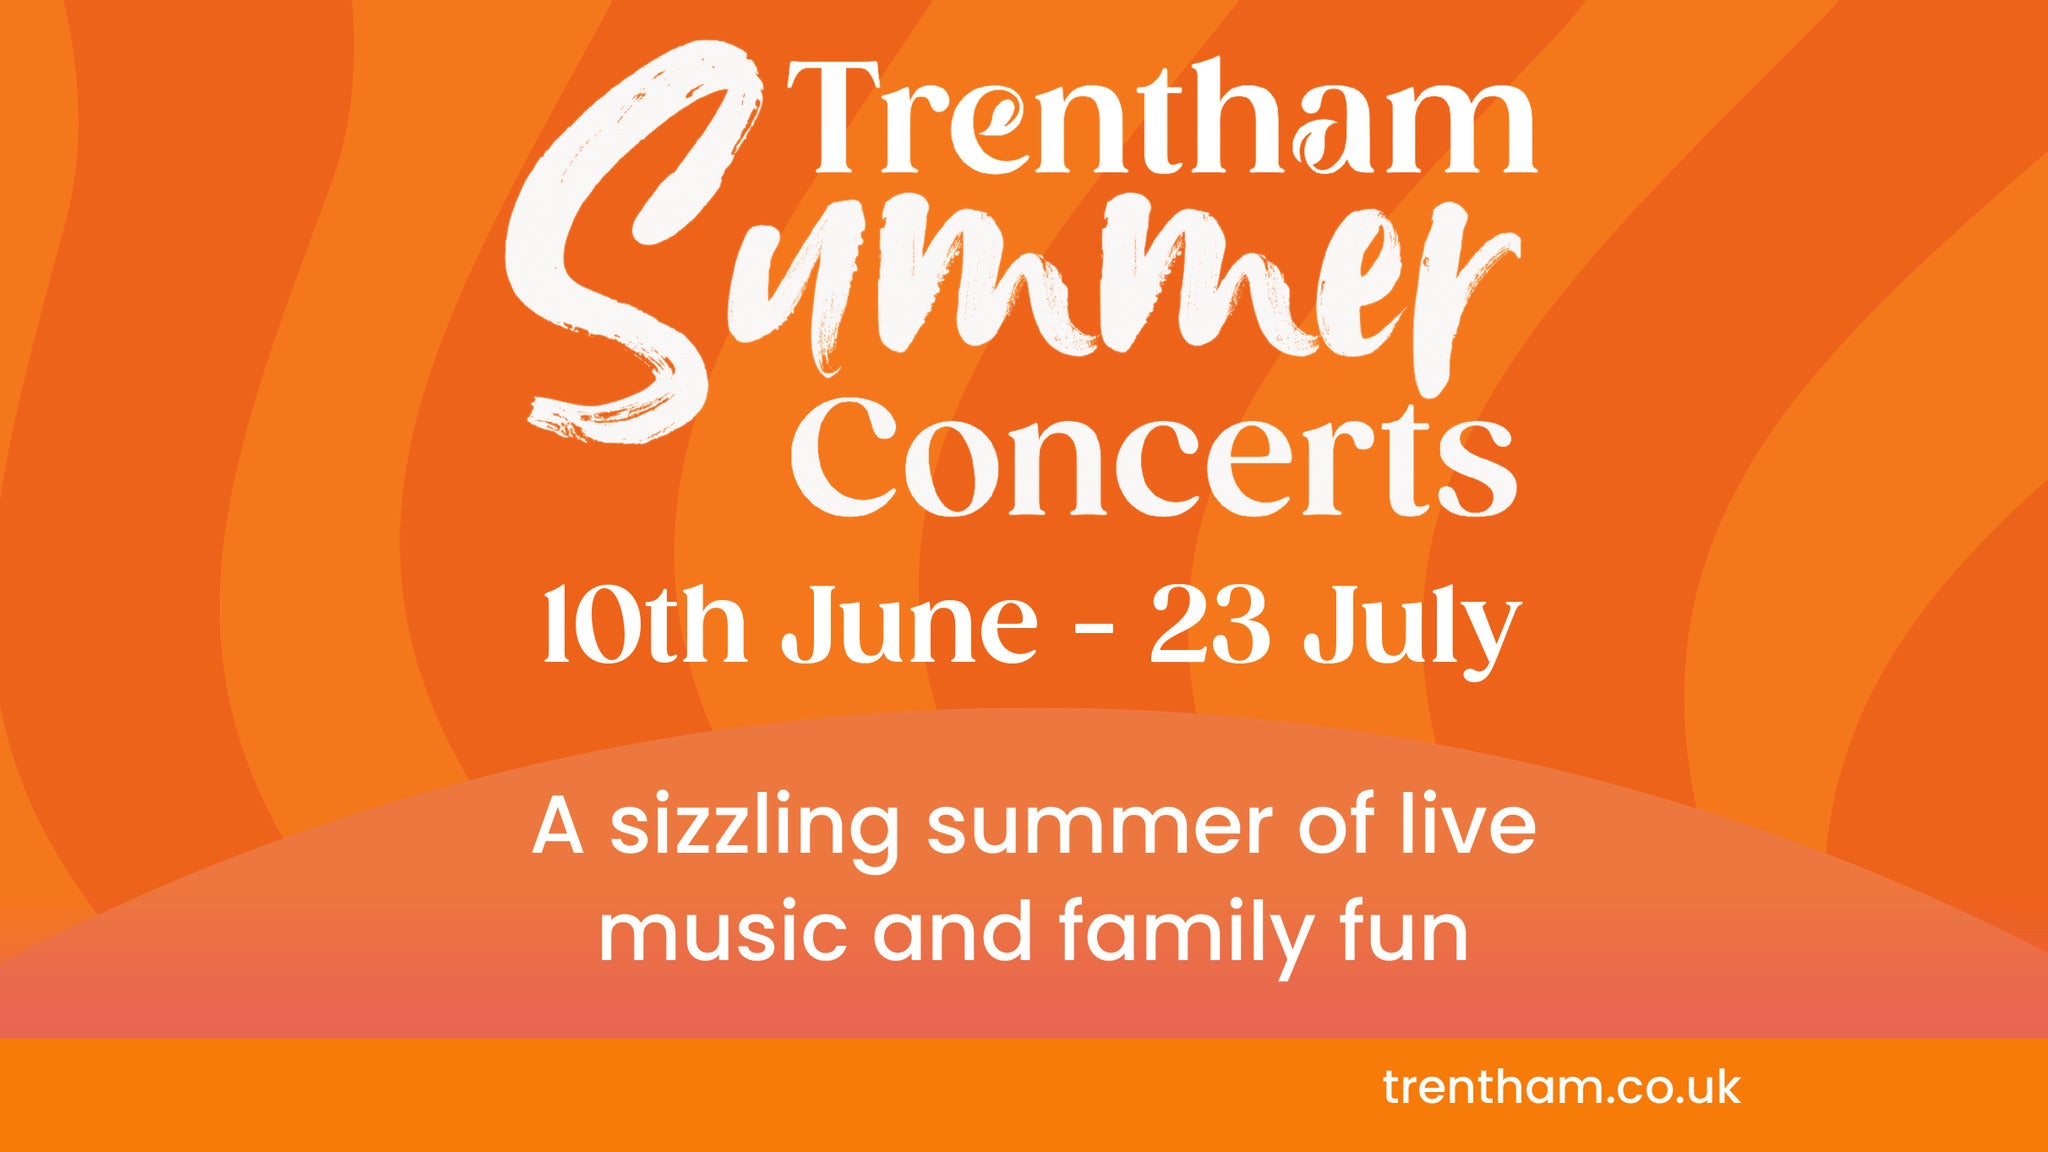 Trentham Summer Concerts presale information on freepresalepasswords.com